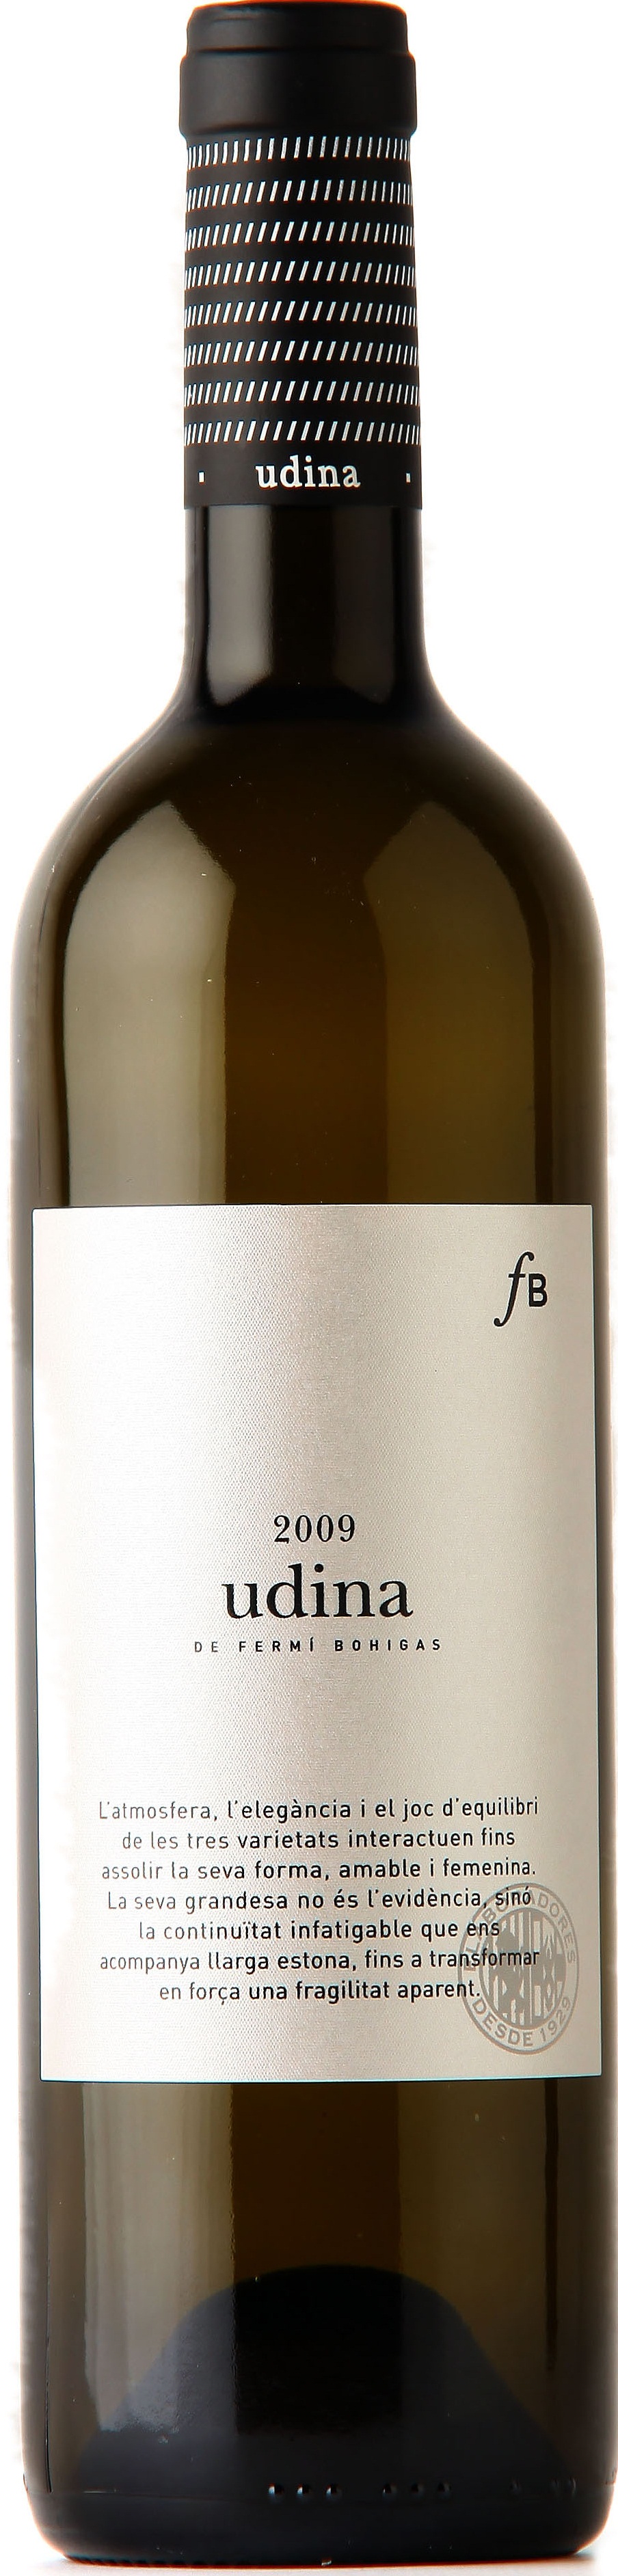 Imagen de la botella de Vino Udina de Fermí Bohigas